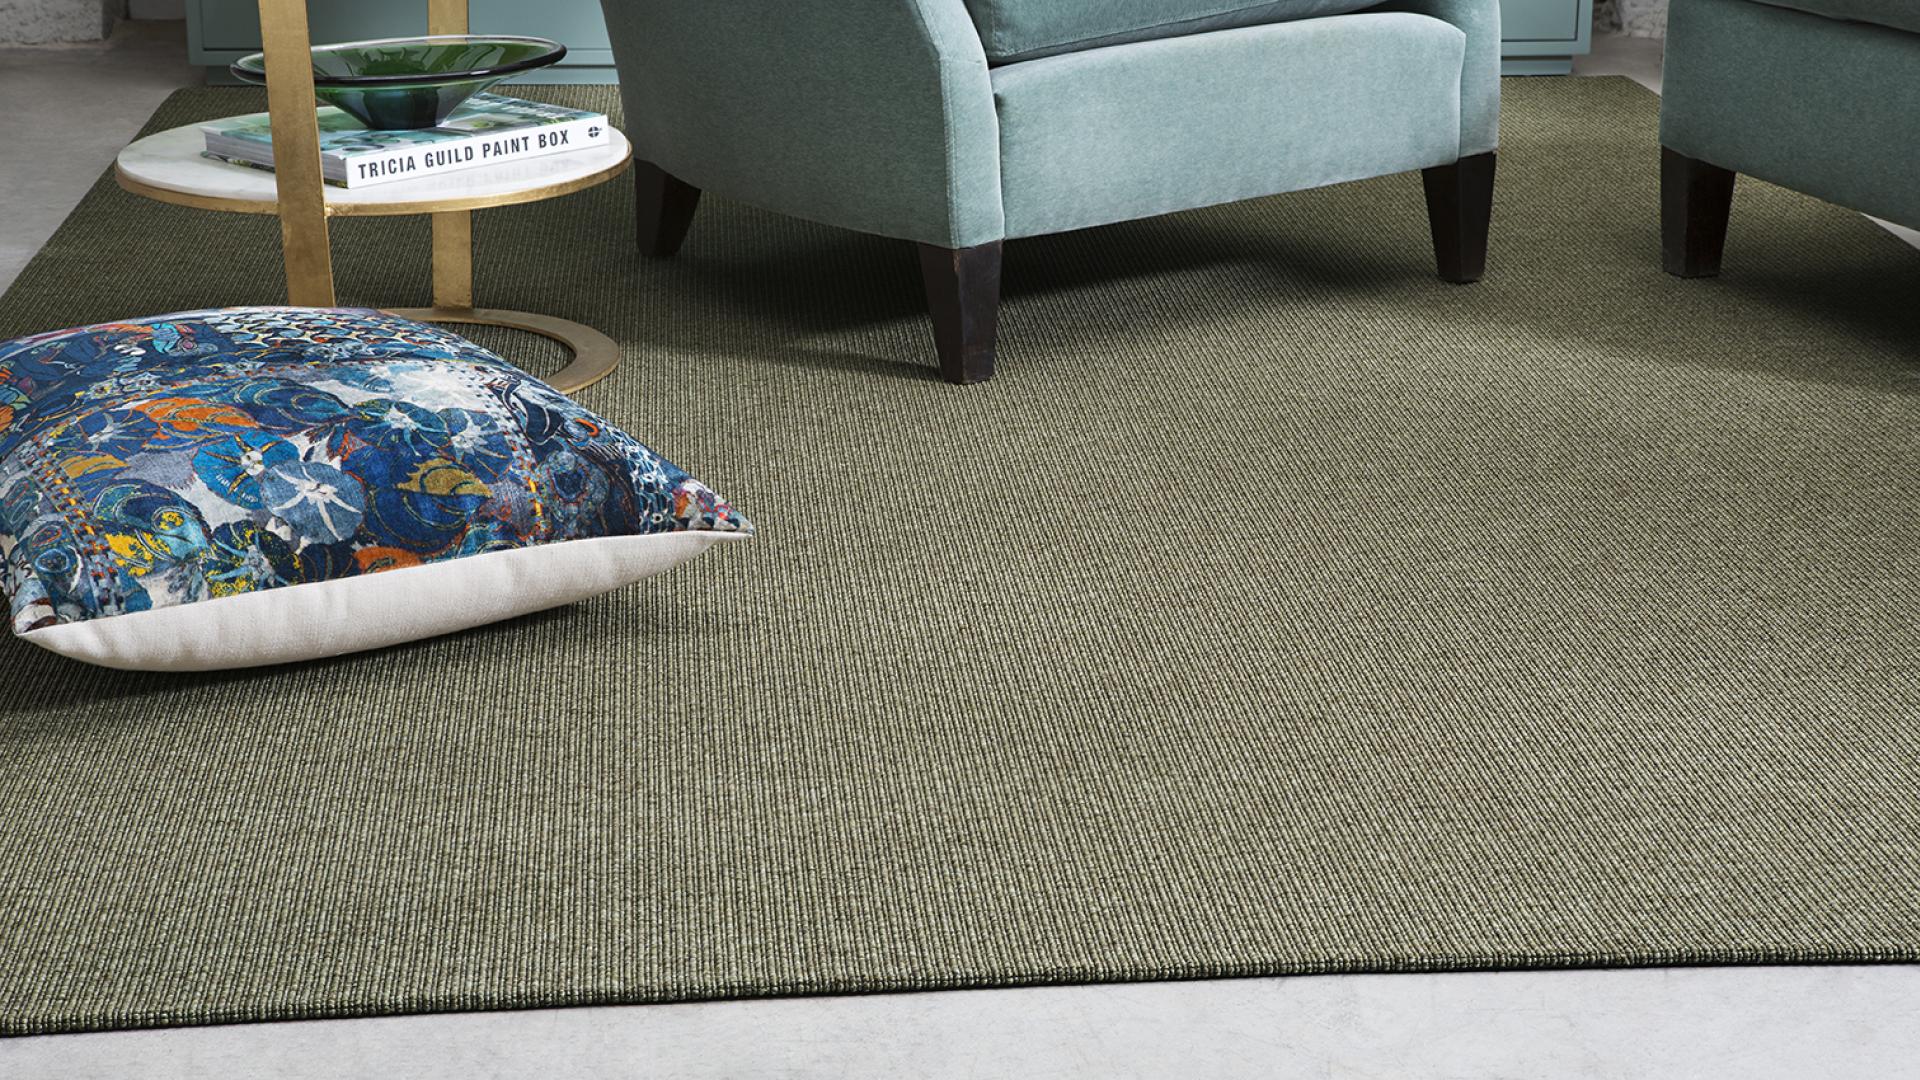 butacas y cojin sobre alfombra nórdica kontract kp alfombras a medida